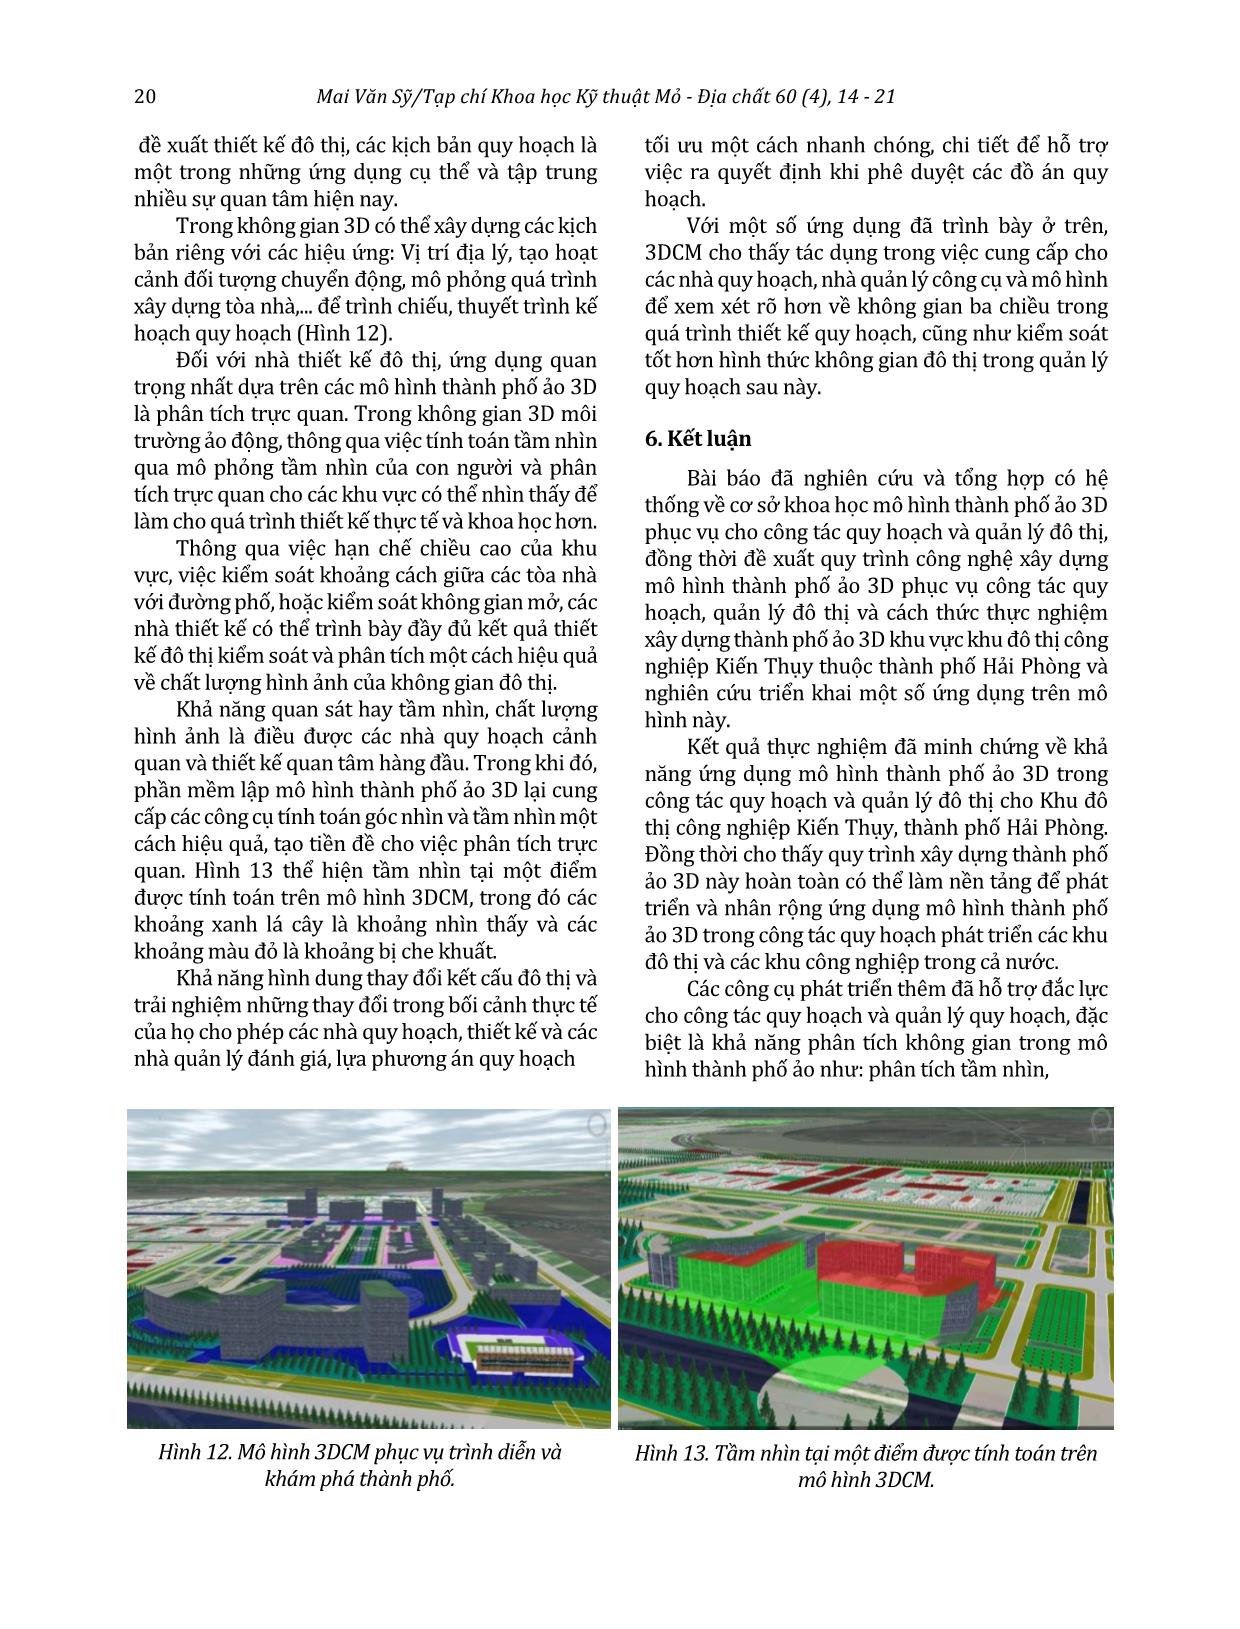 Ứng dụng mô hình thành phố ảo trong quy hoạch và quản lý đô thị tại khu công nghiệp Kiến Thụy - Hải Phòng trang 7